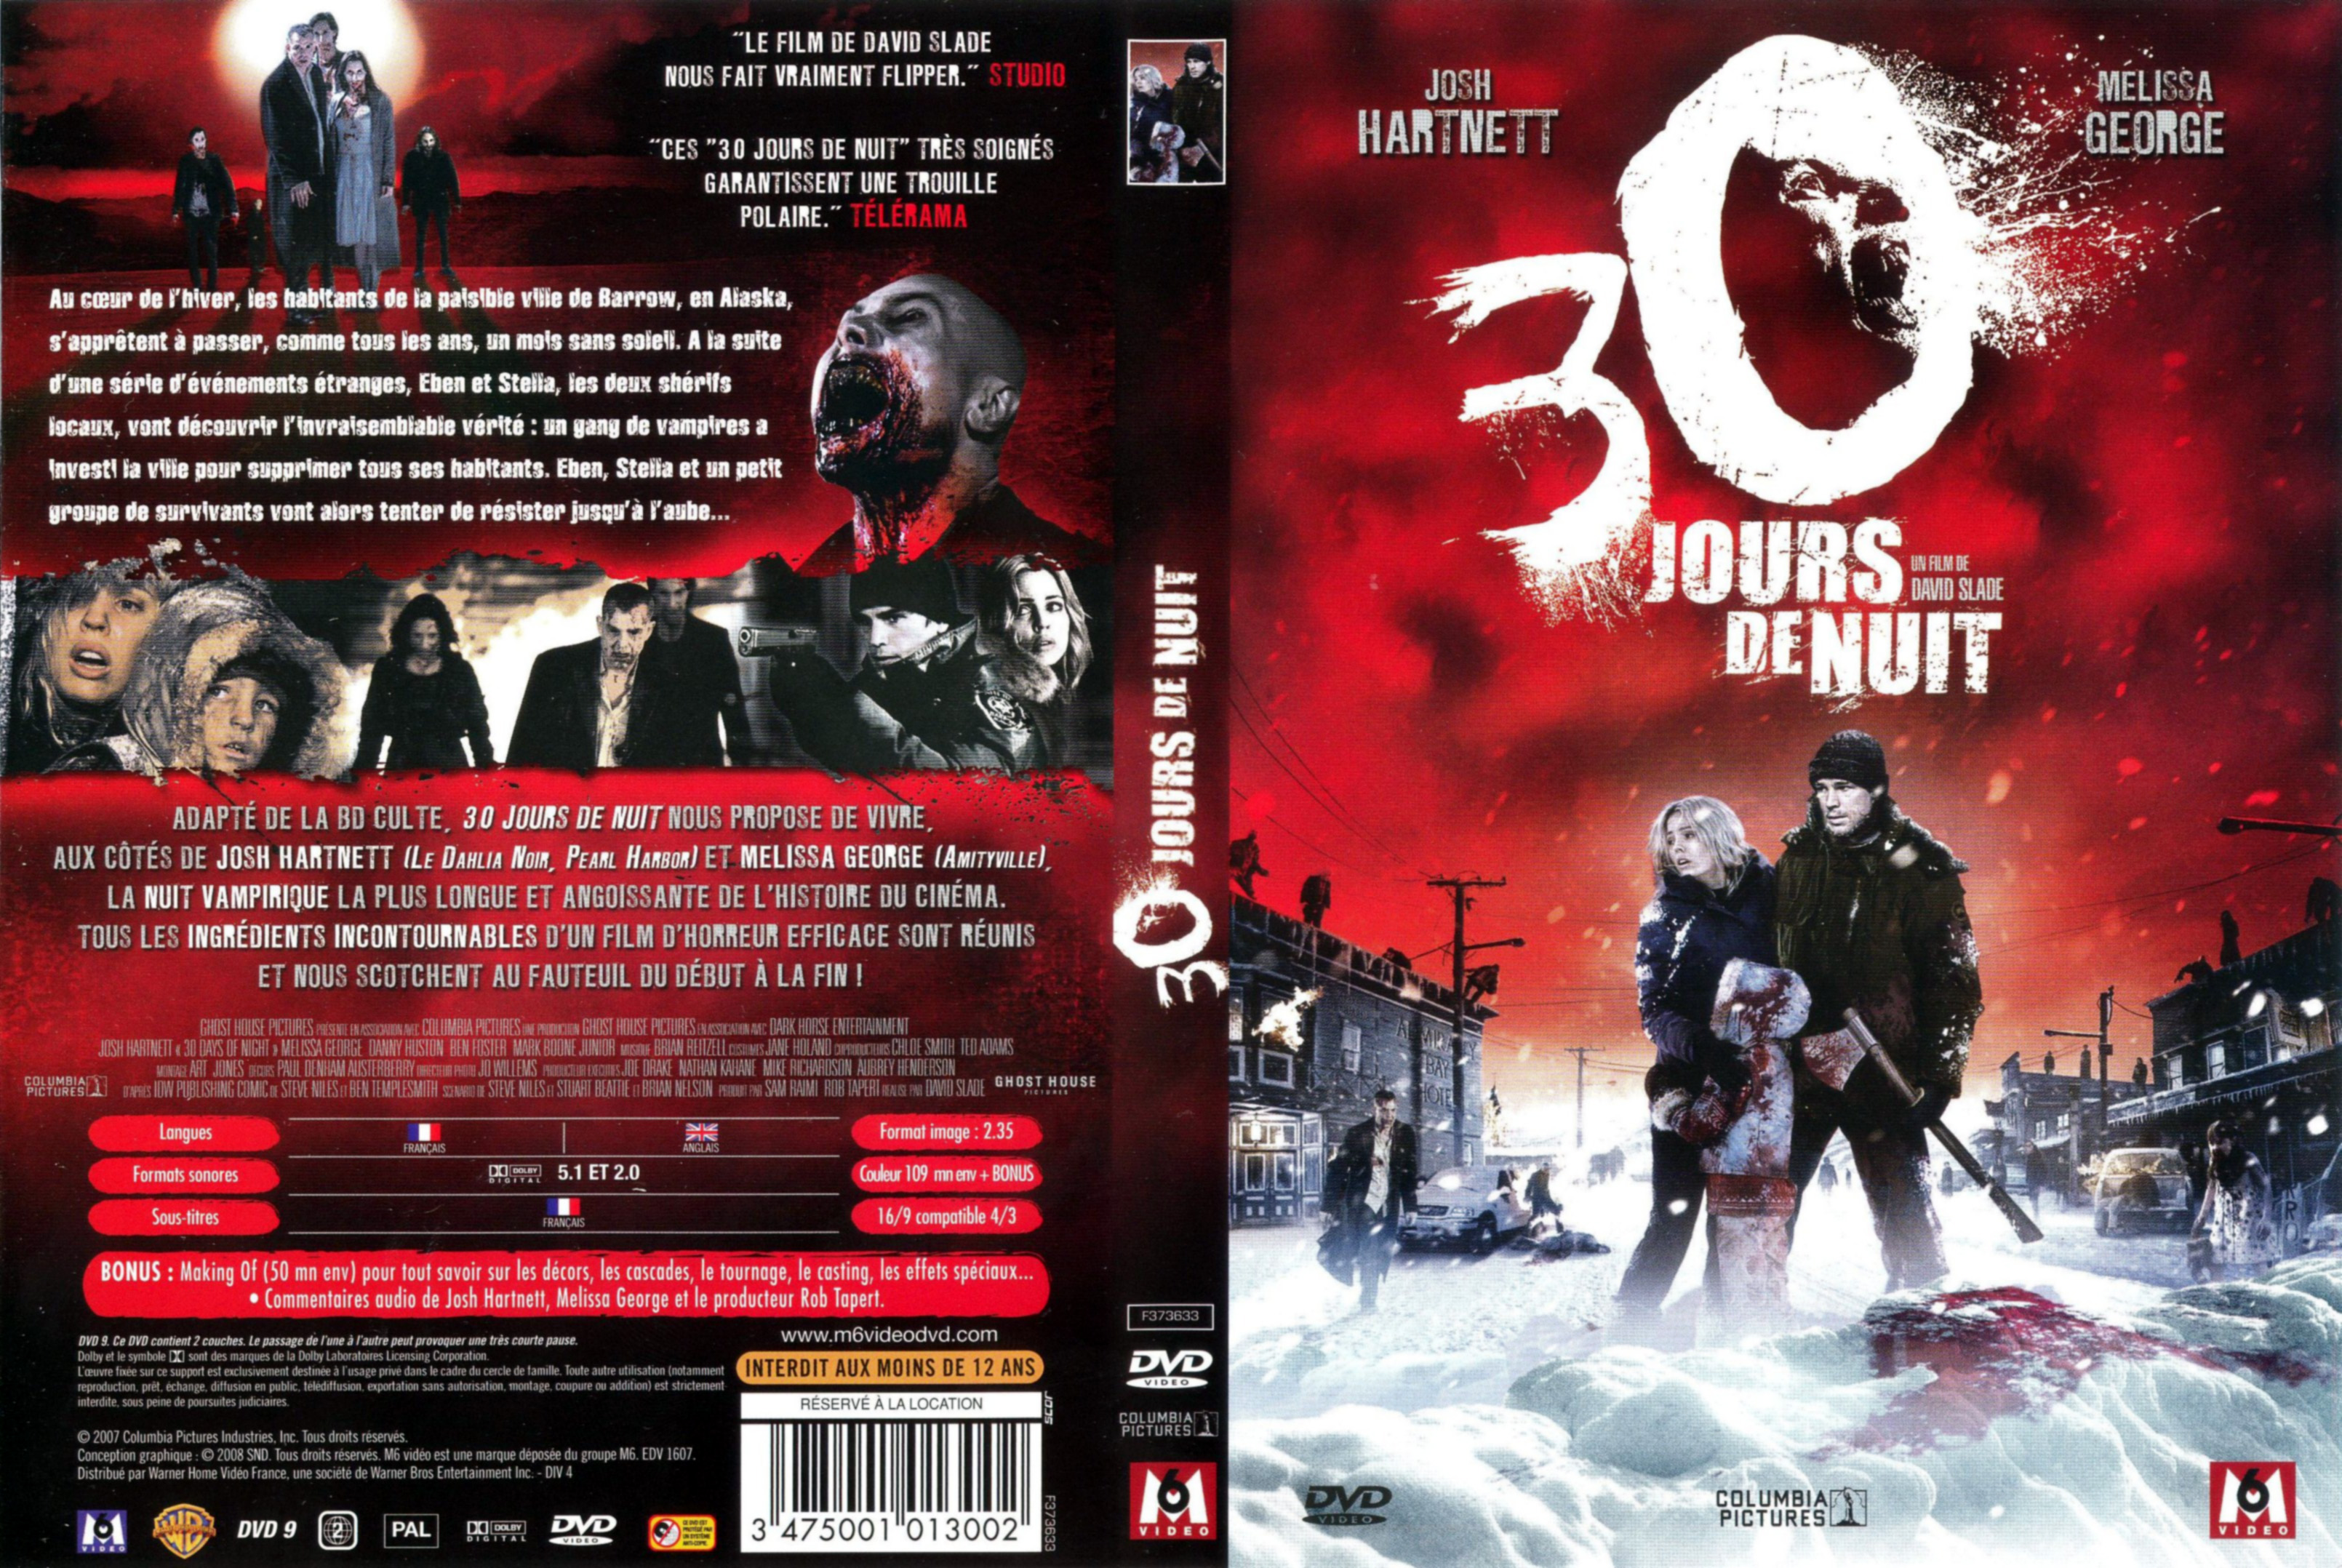 Jaquette DVD 30 jours de nuit